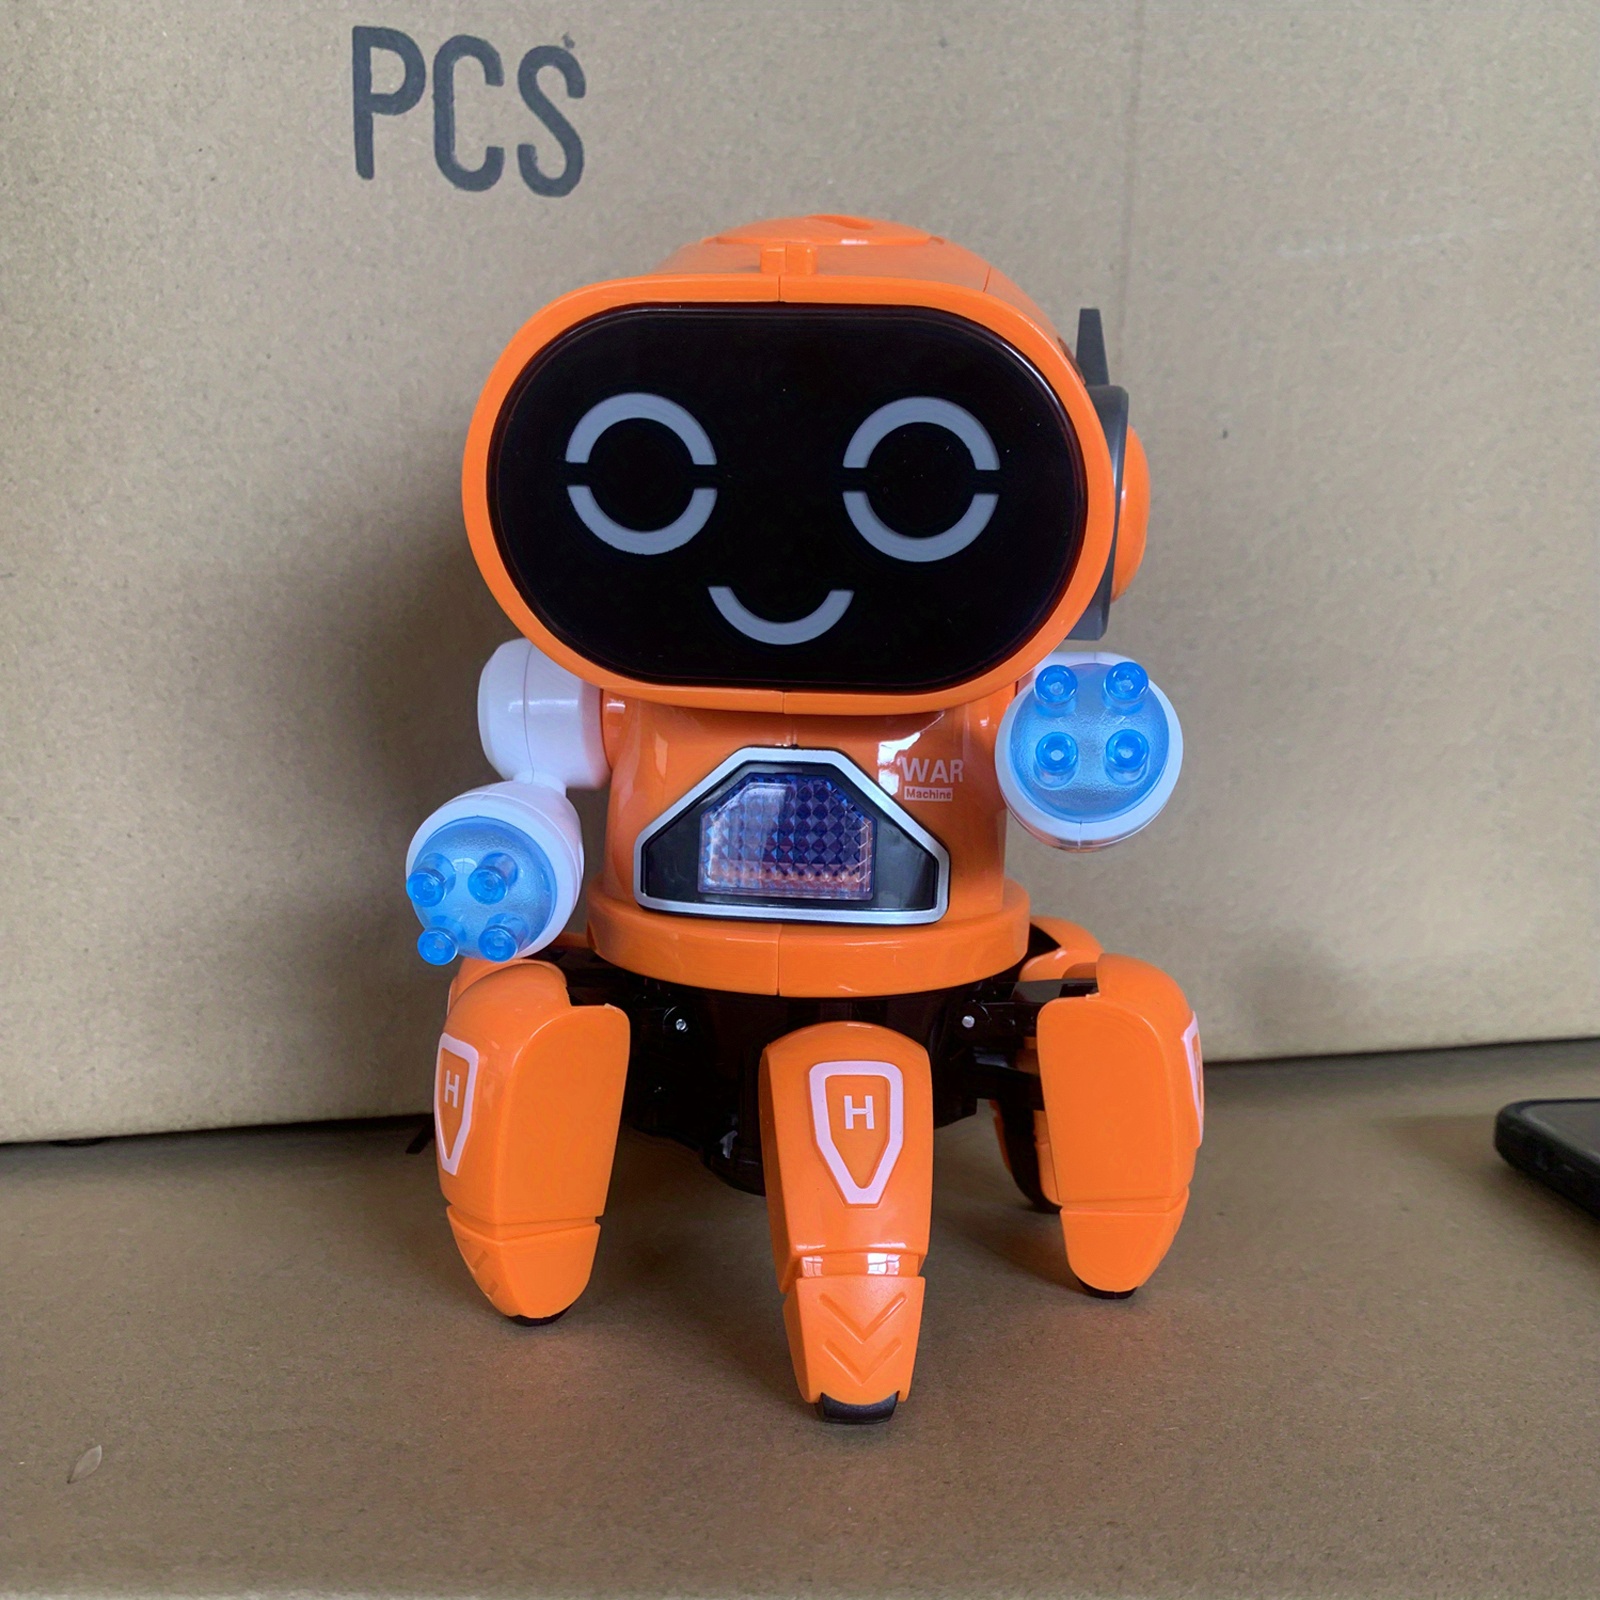 Robot de danse électrique automatique, jouets de robot pour enfants pour  garçons filles, robot de danse avec led colorée, jouets électroniques  interactifs début robot éducatif pour